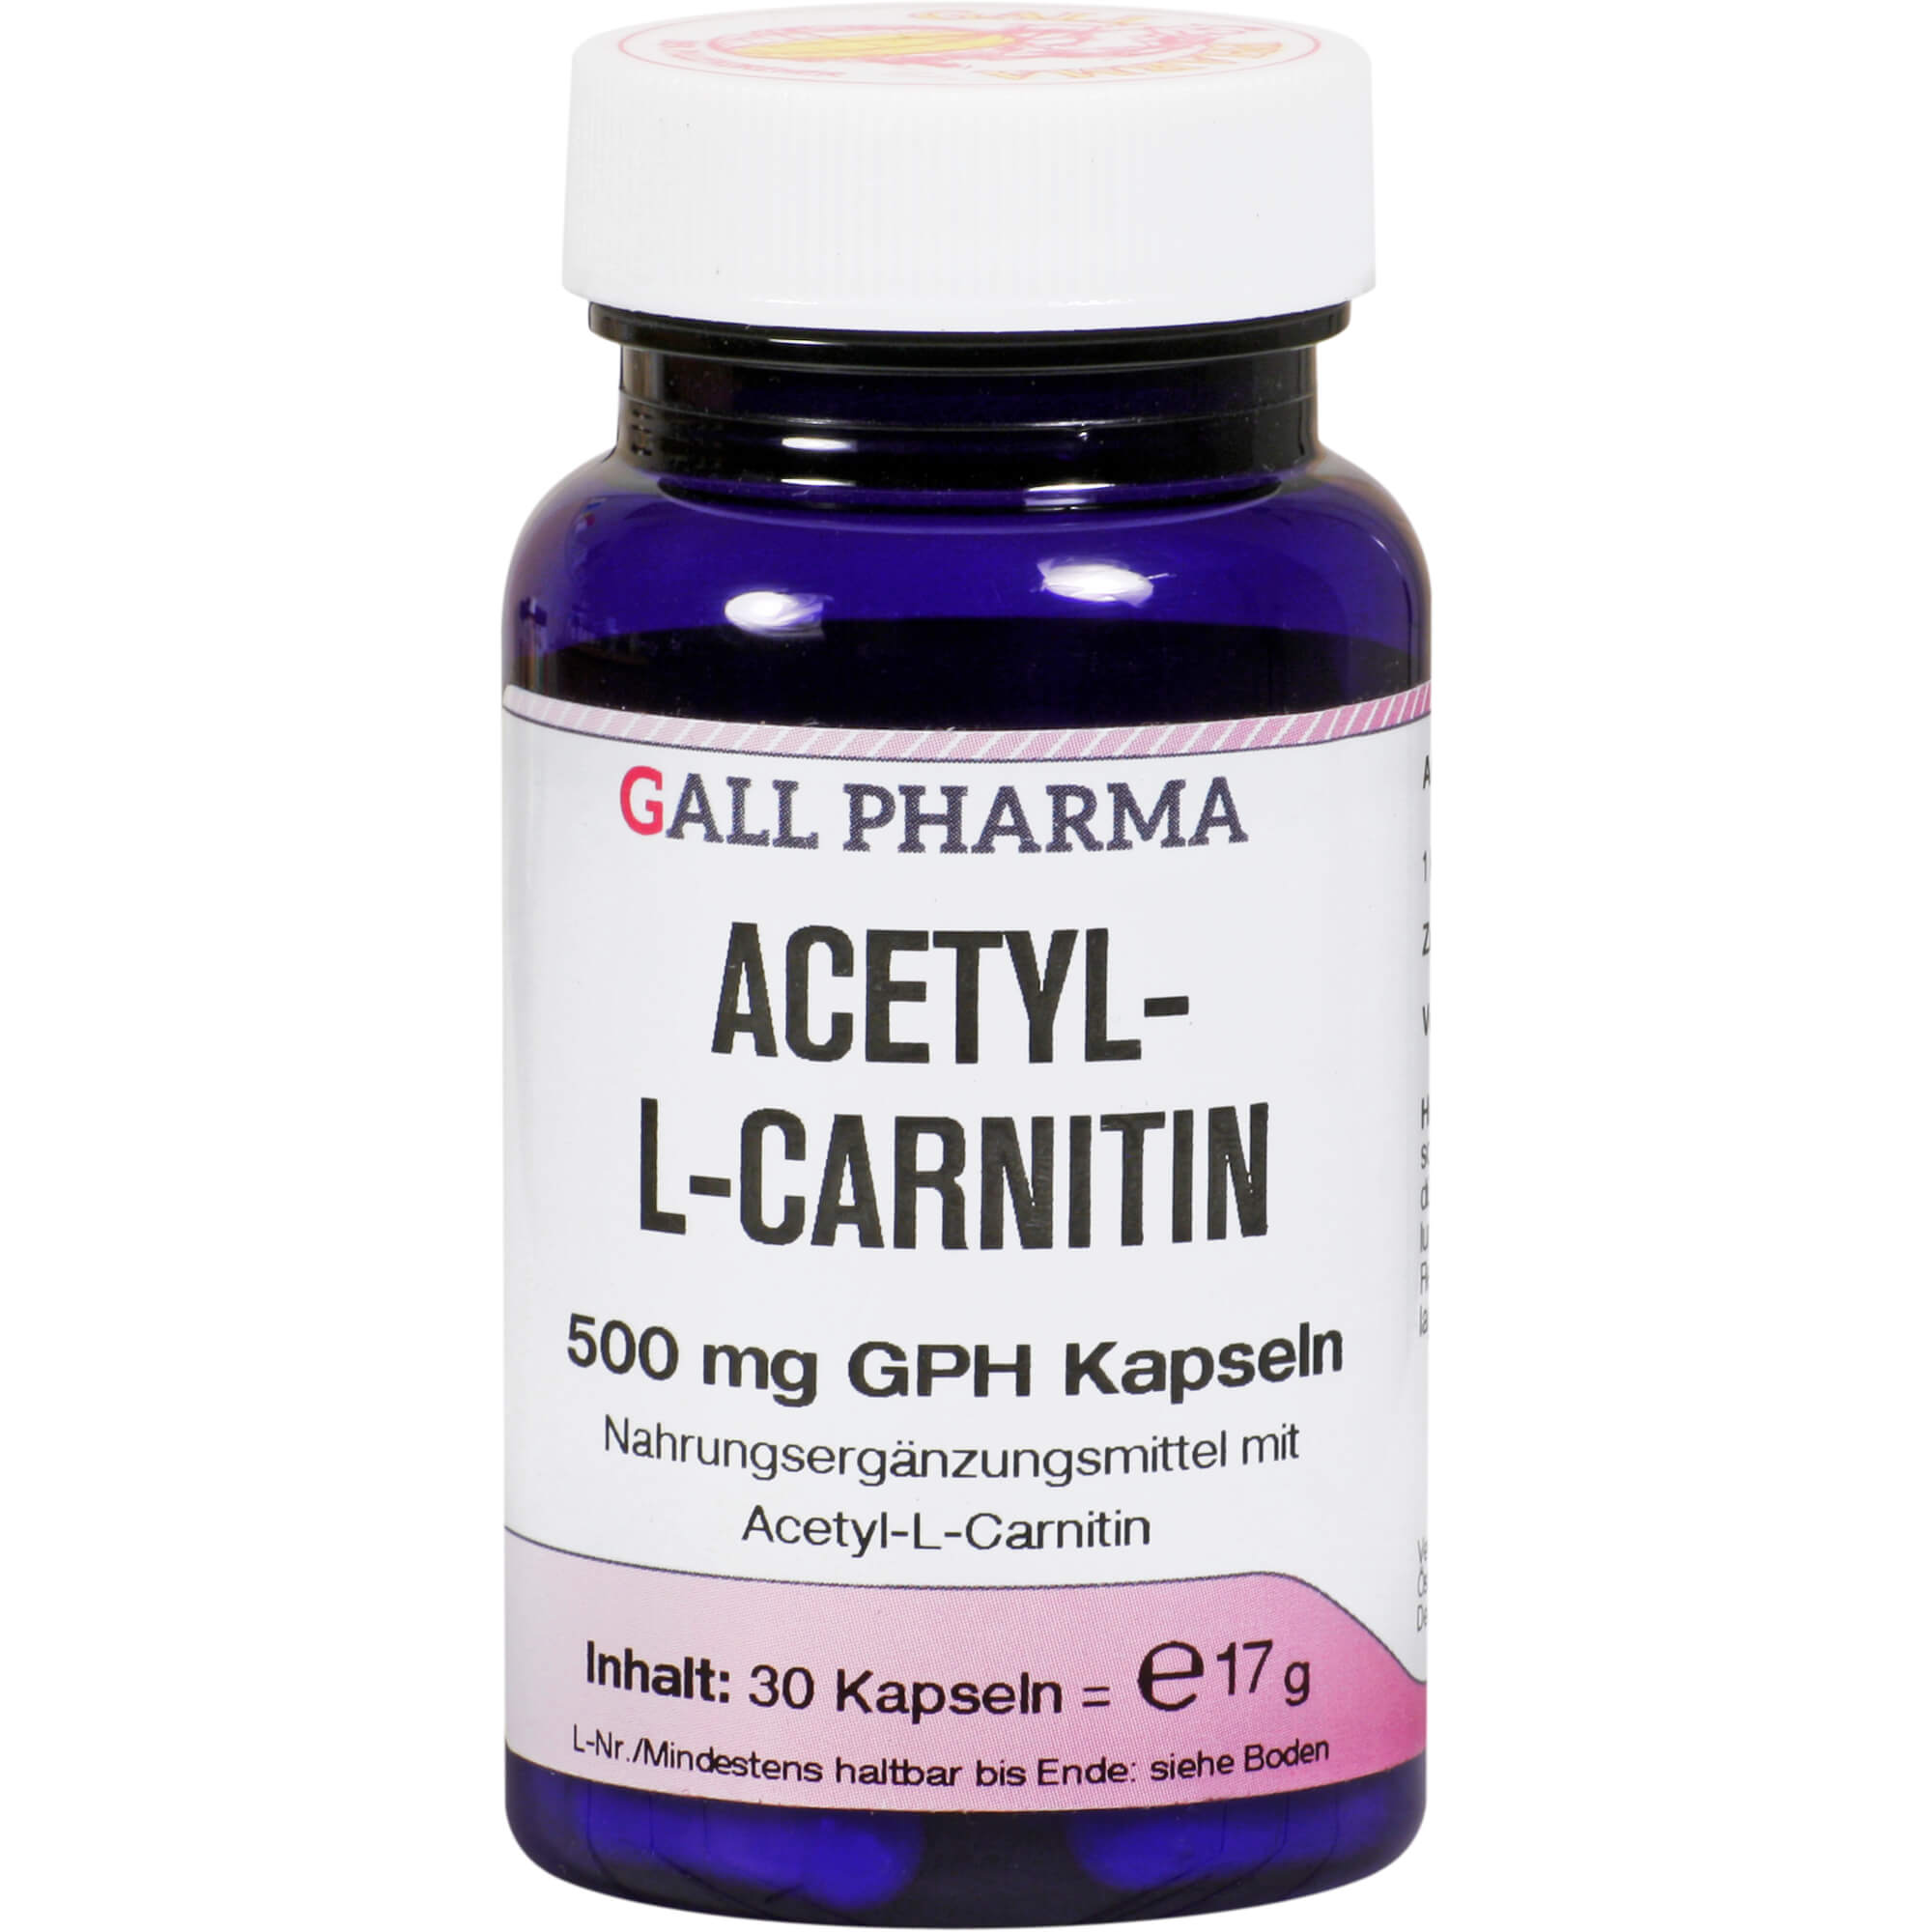 Nahrungsergänzungsmittel mit Acetyl-L-Cartinin.